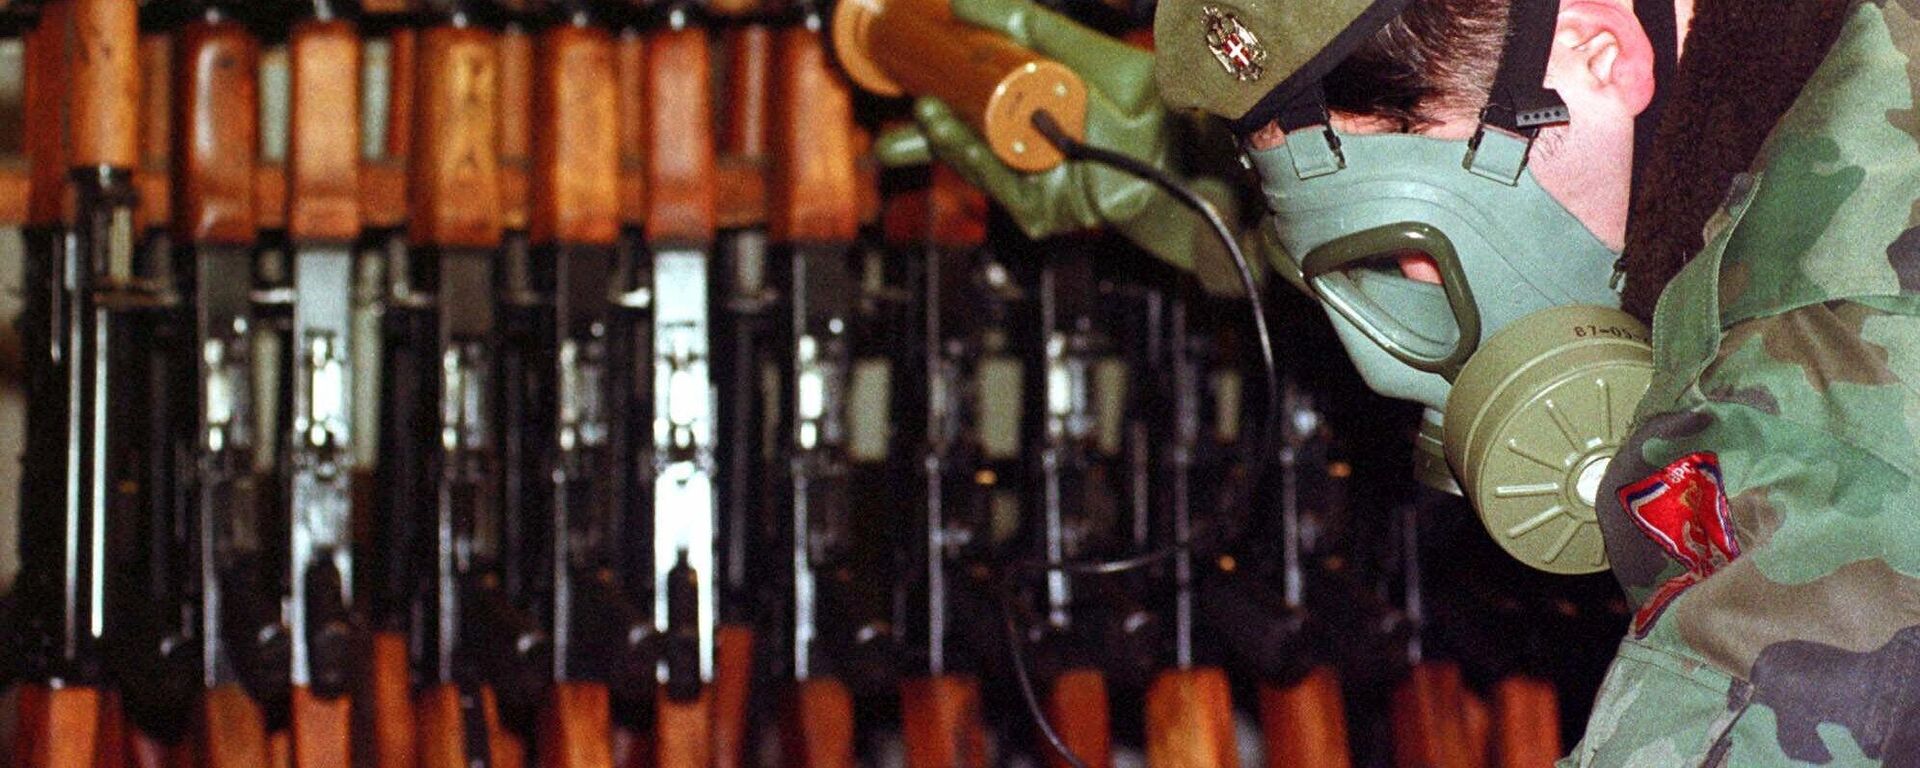 Một binh sĩ quân đội người Serb ở Bosnia đo mức độ phóng xạ trên vũ khí và thiết bị quân sự tại một nhà máy quân sự ở thị trấn Bratunac phía đông Bosnia. - Sputnik Việt Nam, 1920, 23.03.2023